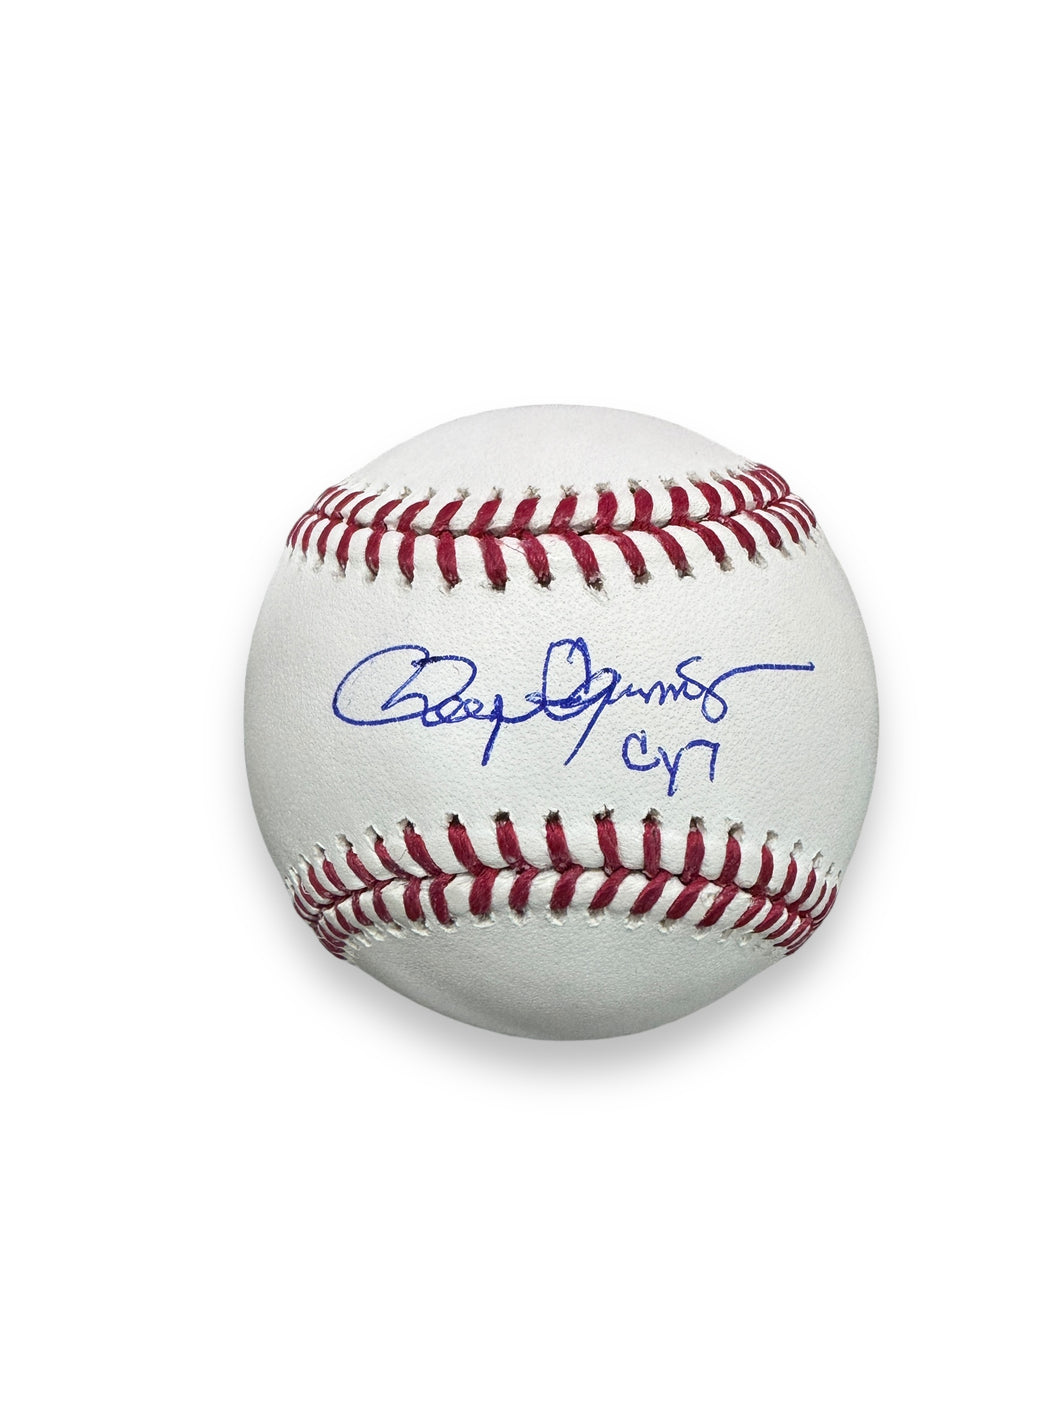 Pelota Baseball / Yankees / Roger Clemens